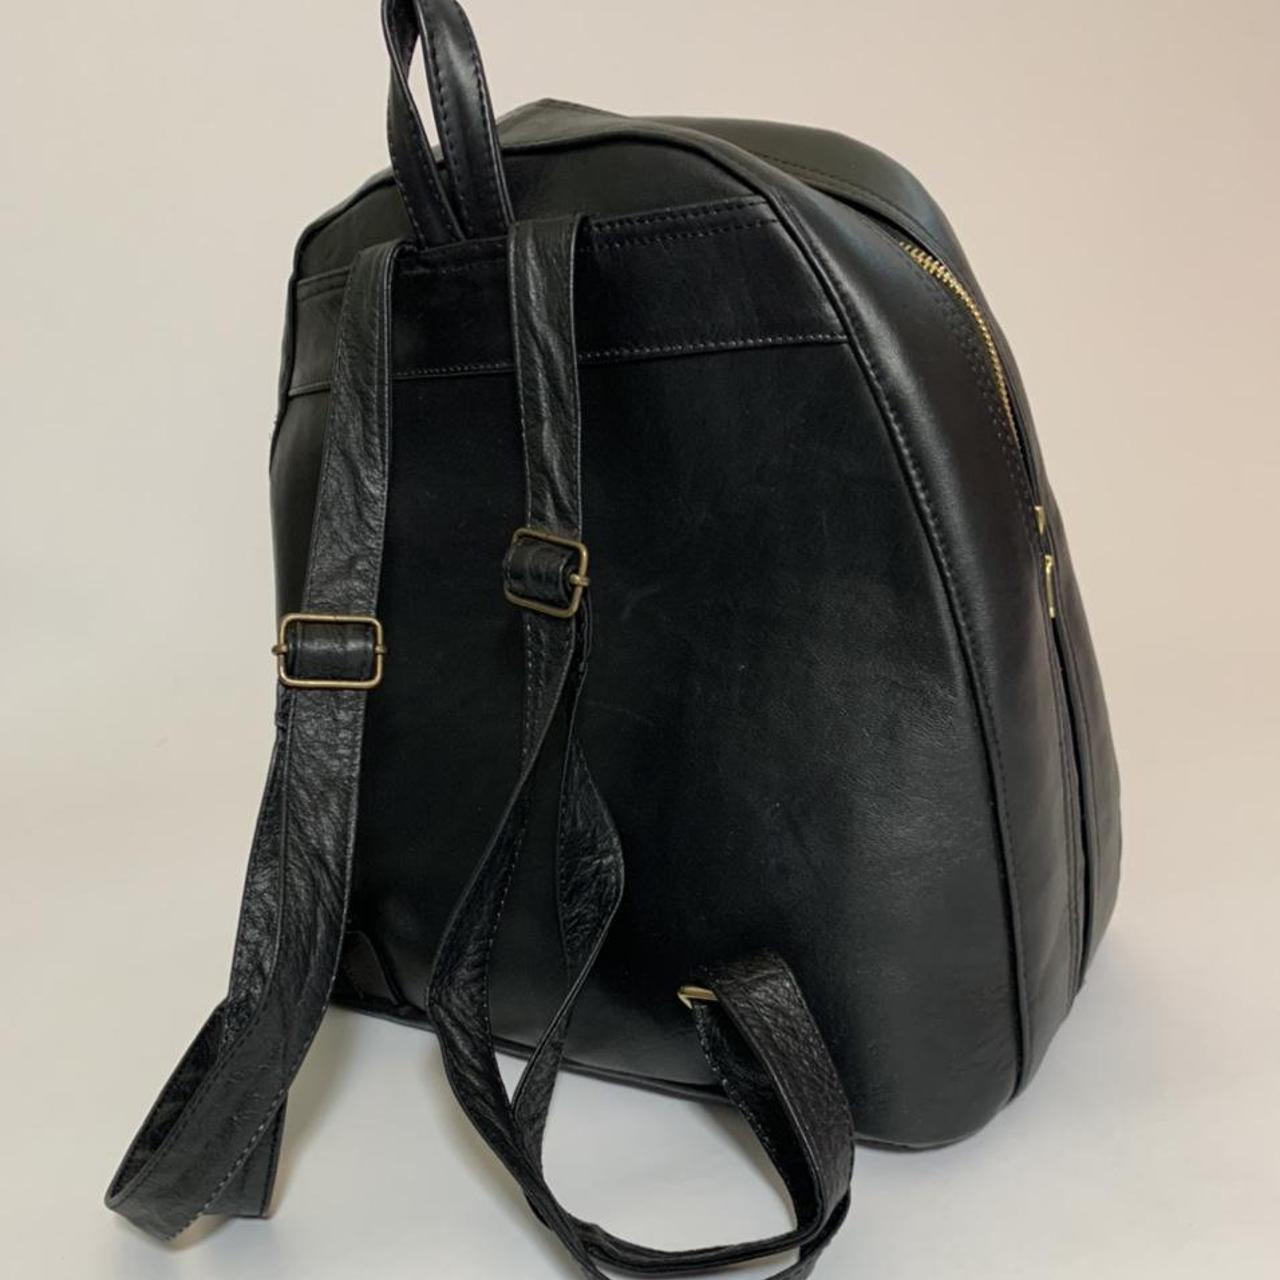 Black embossed leather backpack/bag with gold... - Depop